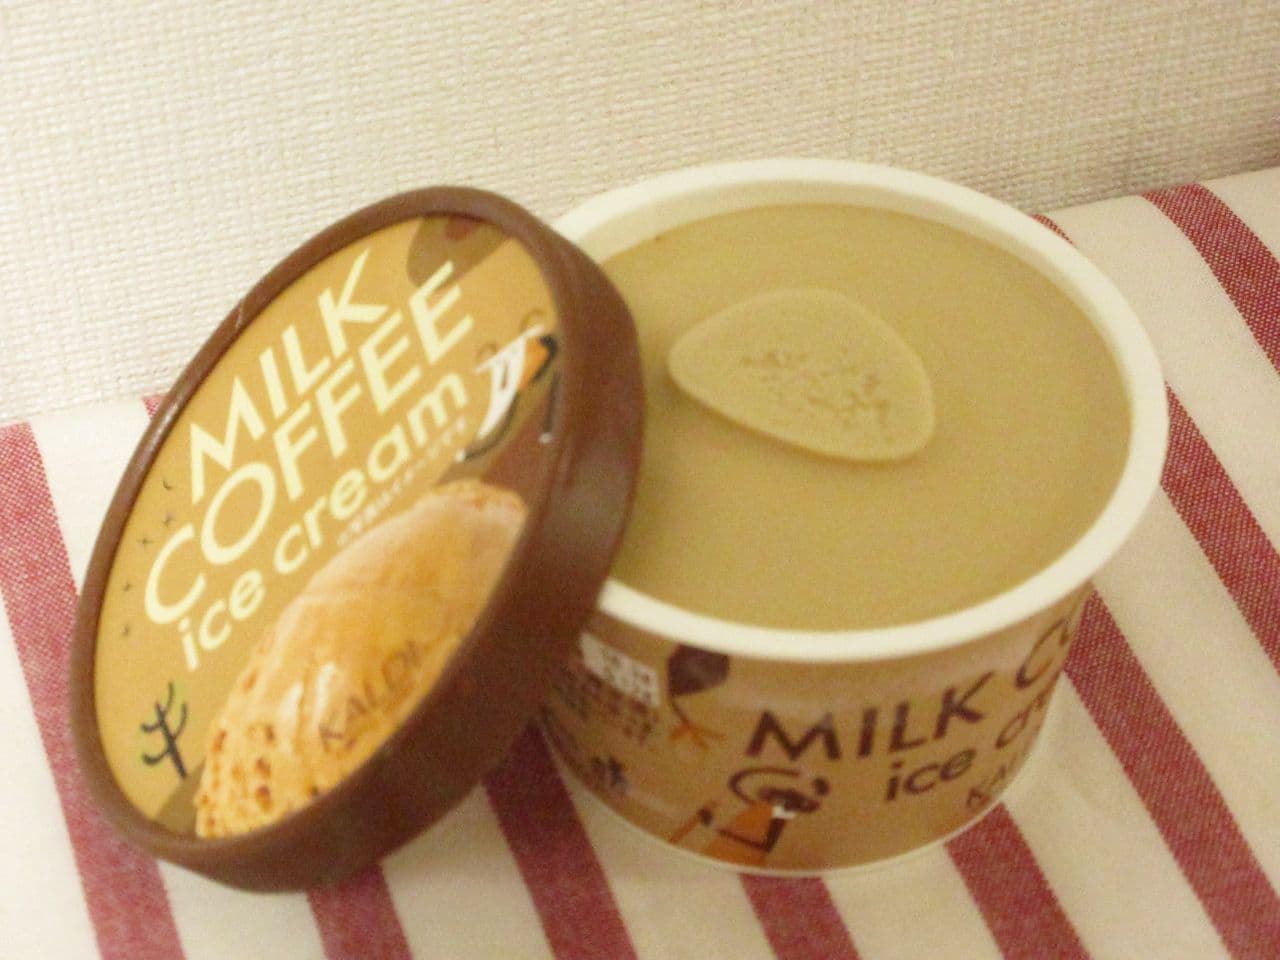 1個216円 カルディ オリジナル ミルクコーヒーアイス はコーヒーの風味とミルクのコクがマッチ 冷凍庫にストックしておきたい爽やかアイス えん食べ